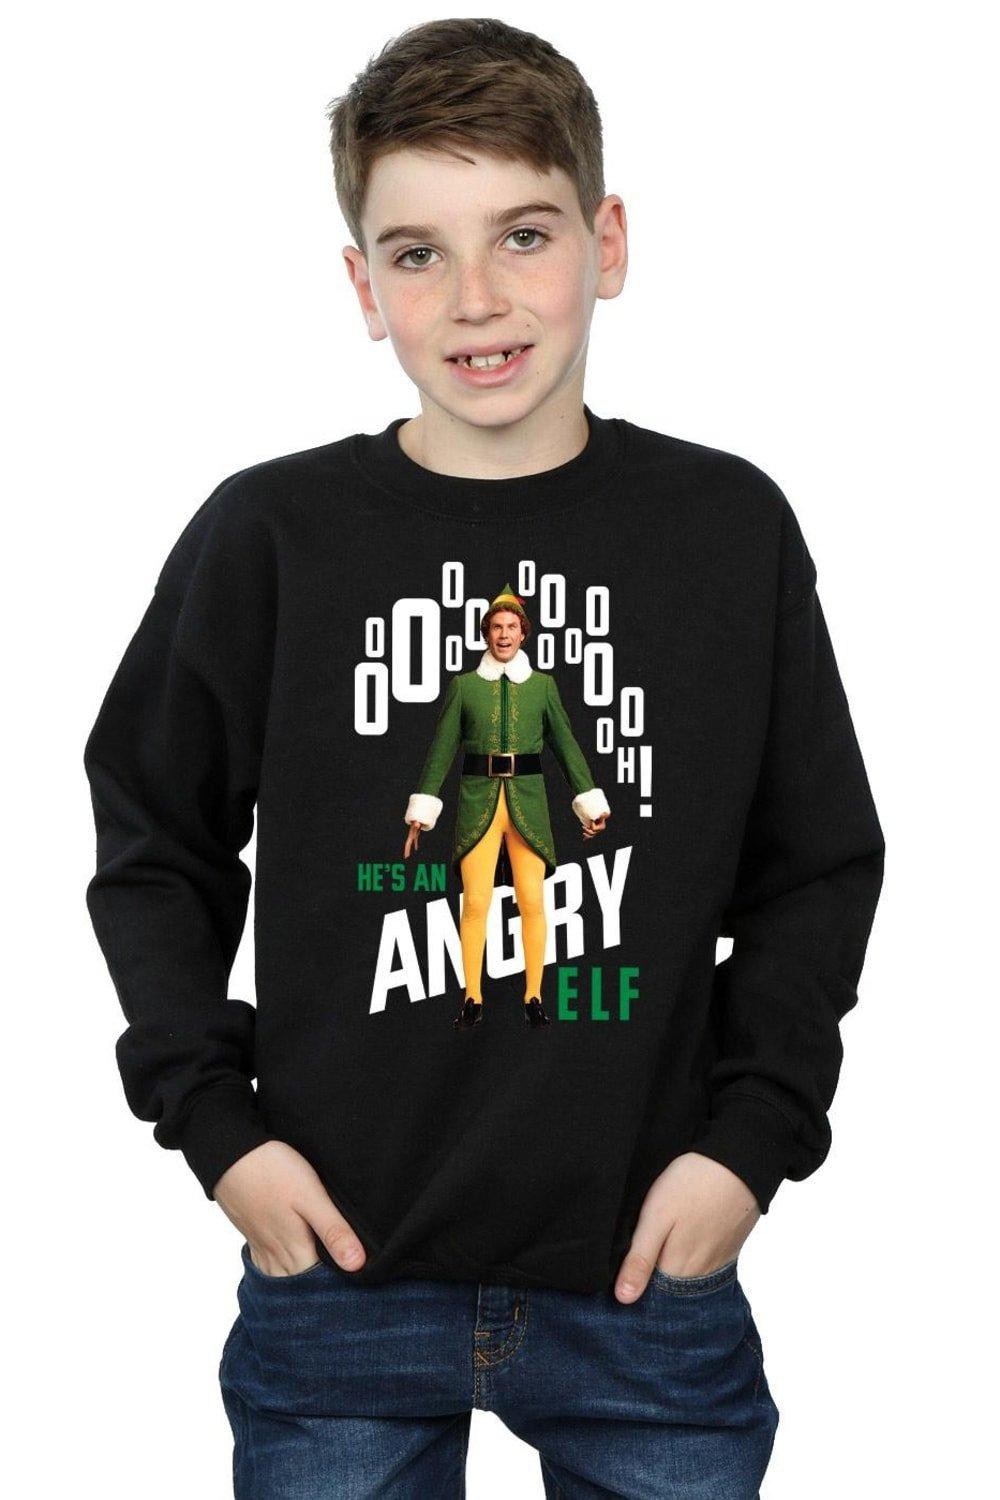 Angry Sweatshirt